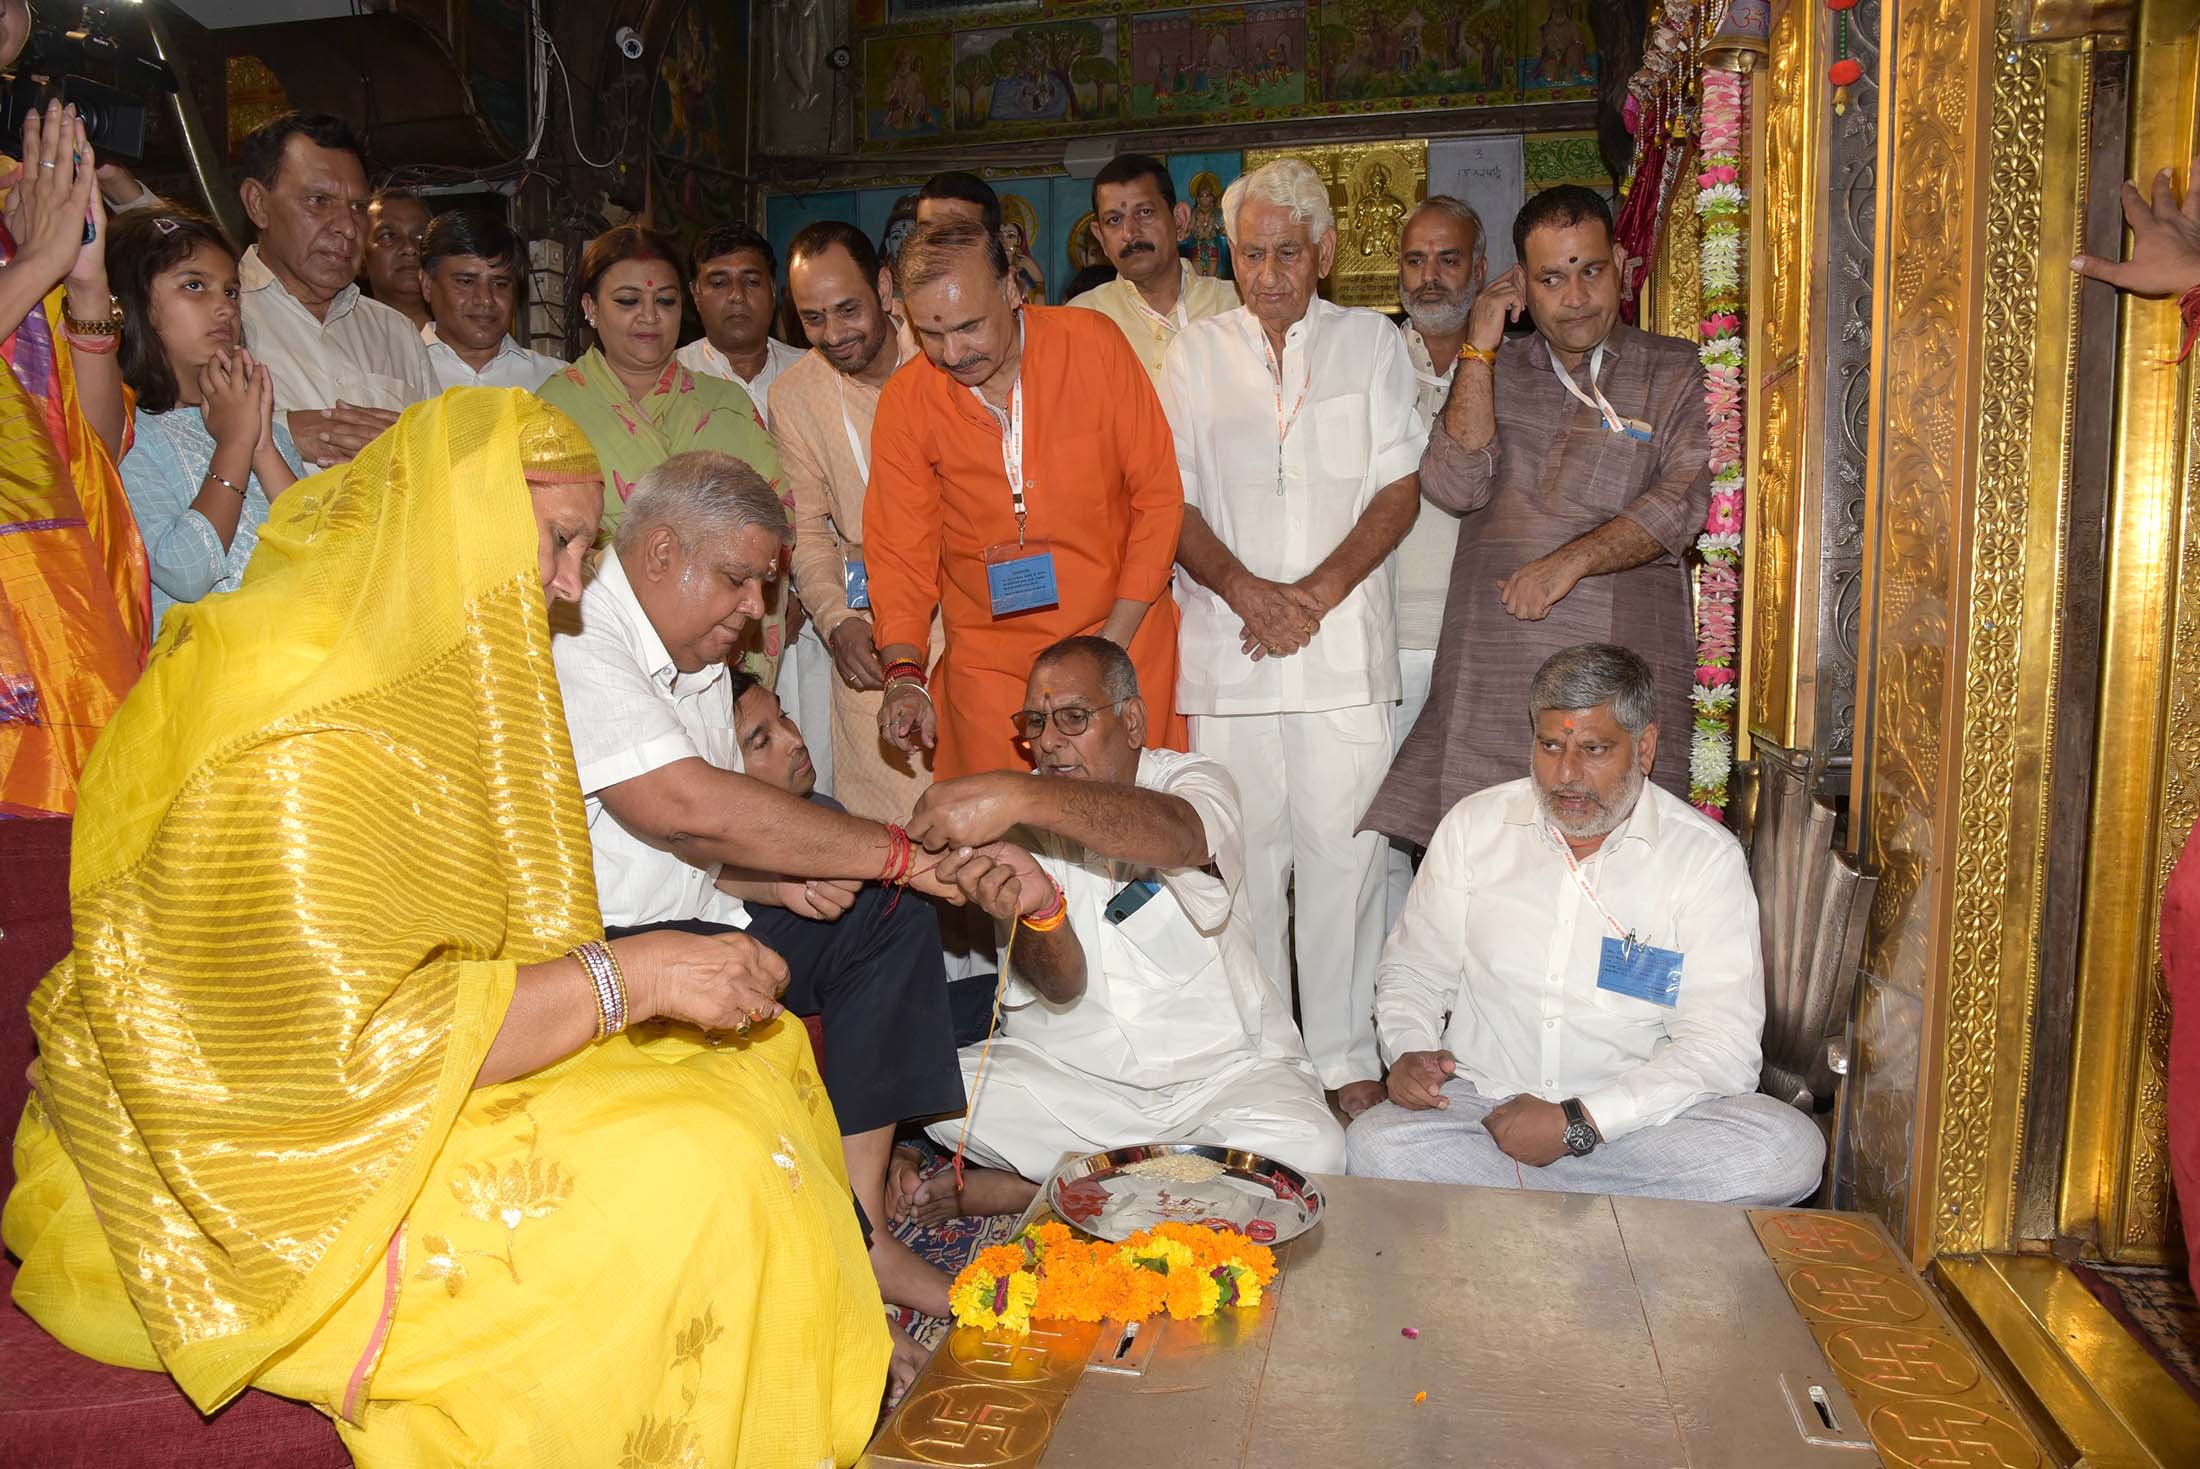 The Vice President, Shri Jagdeep Dhankhar and Dr Sudesh Dhankhar performing puja at Shri Balaji Dham Mandir Salasar Dham, Churu in Rajasthan on September 8, 2022.